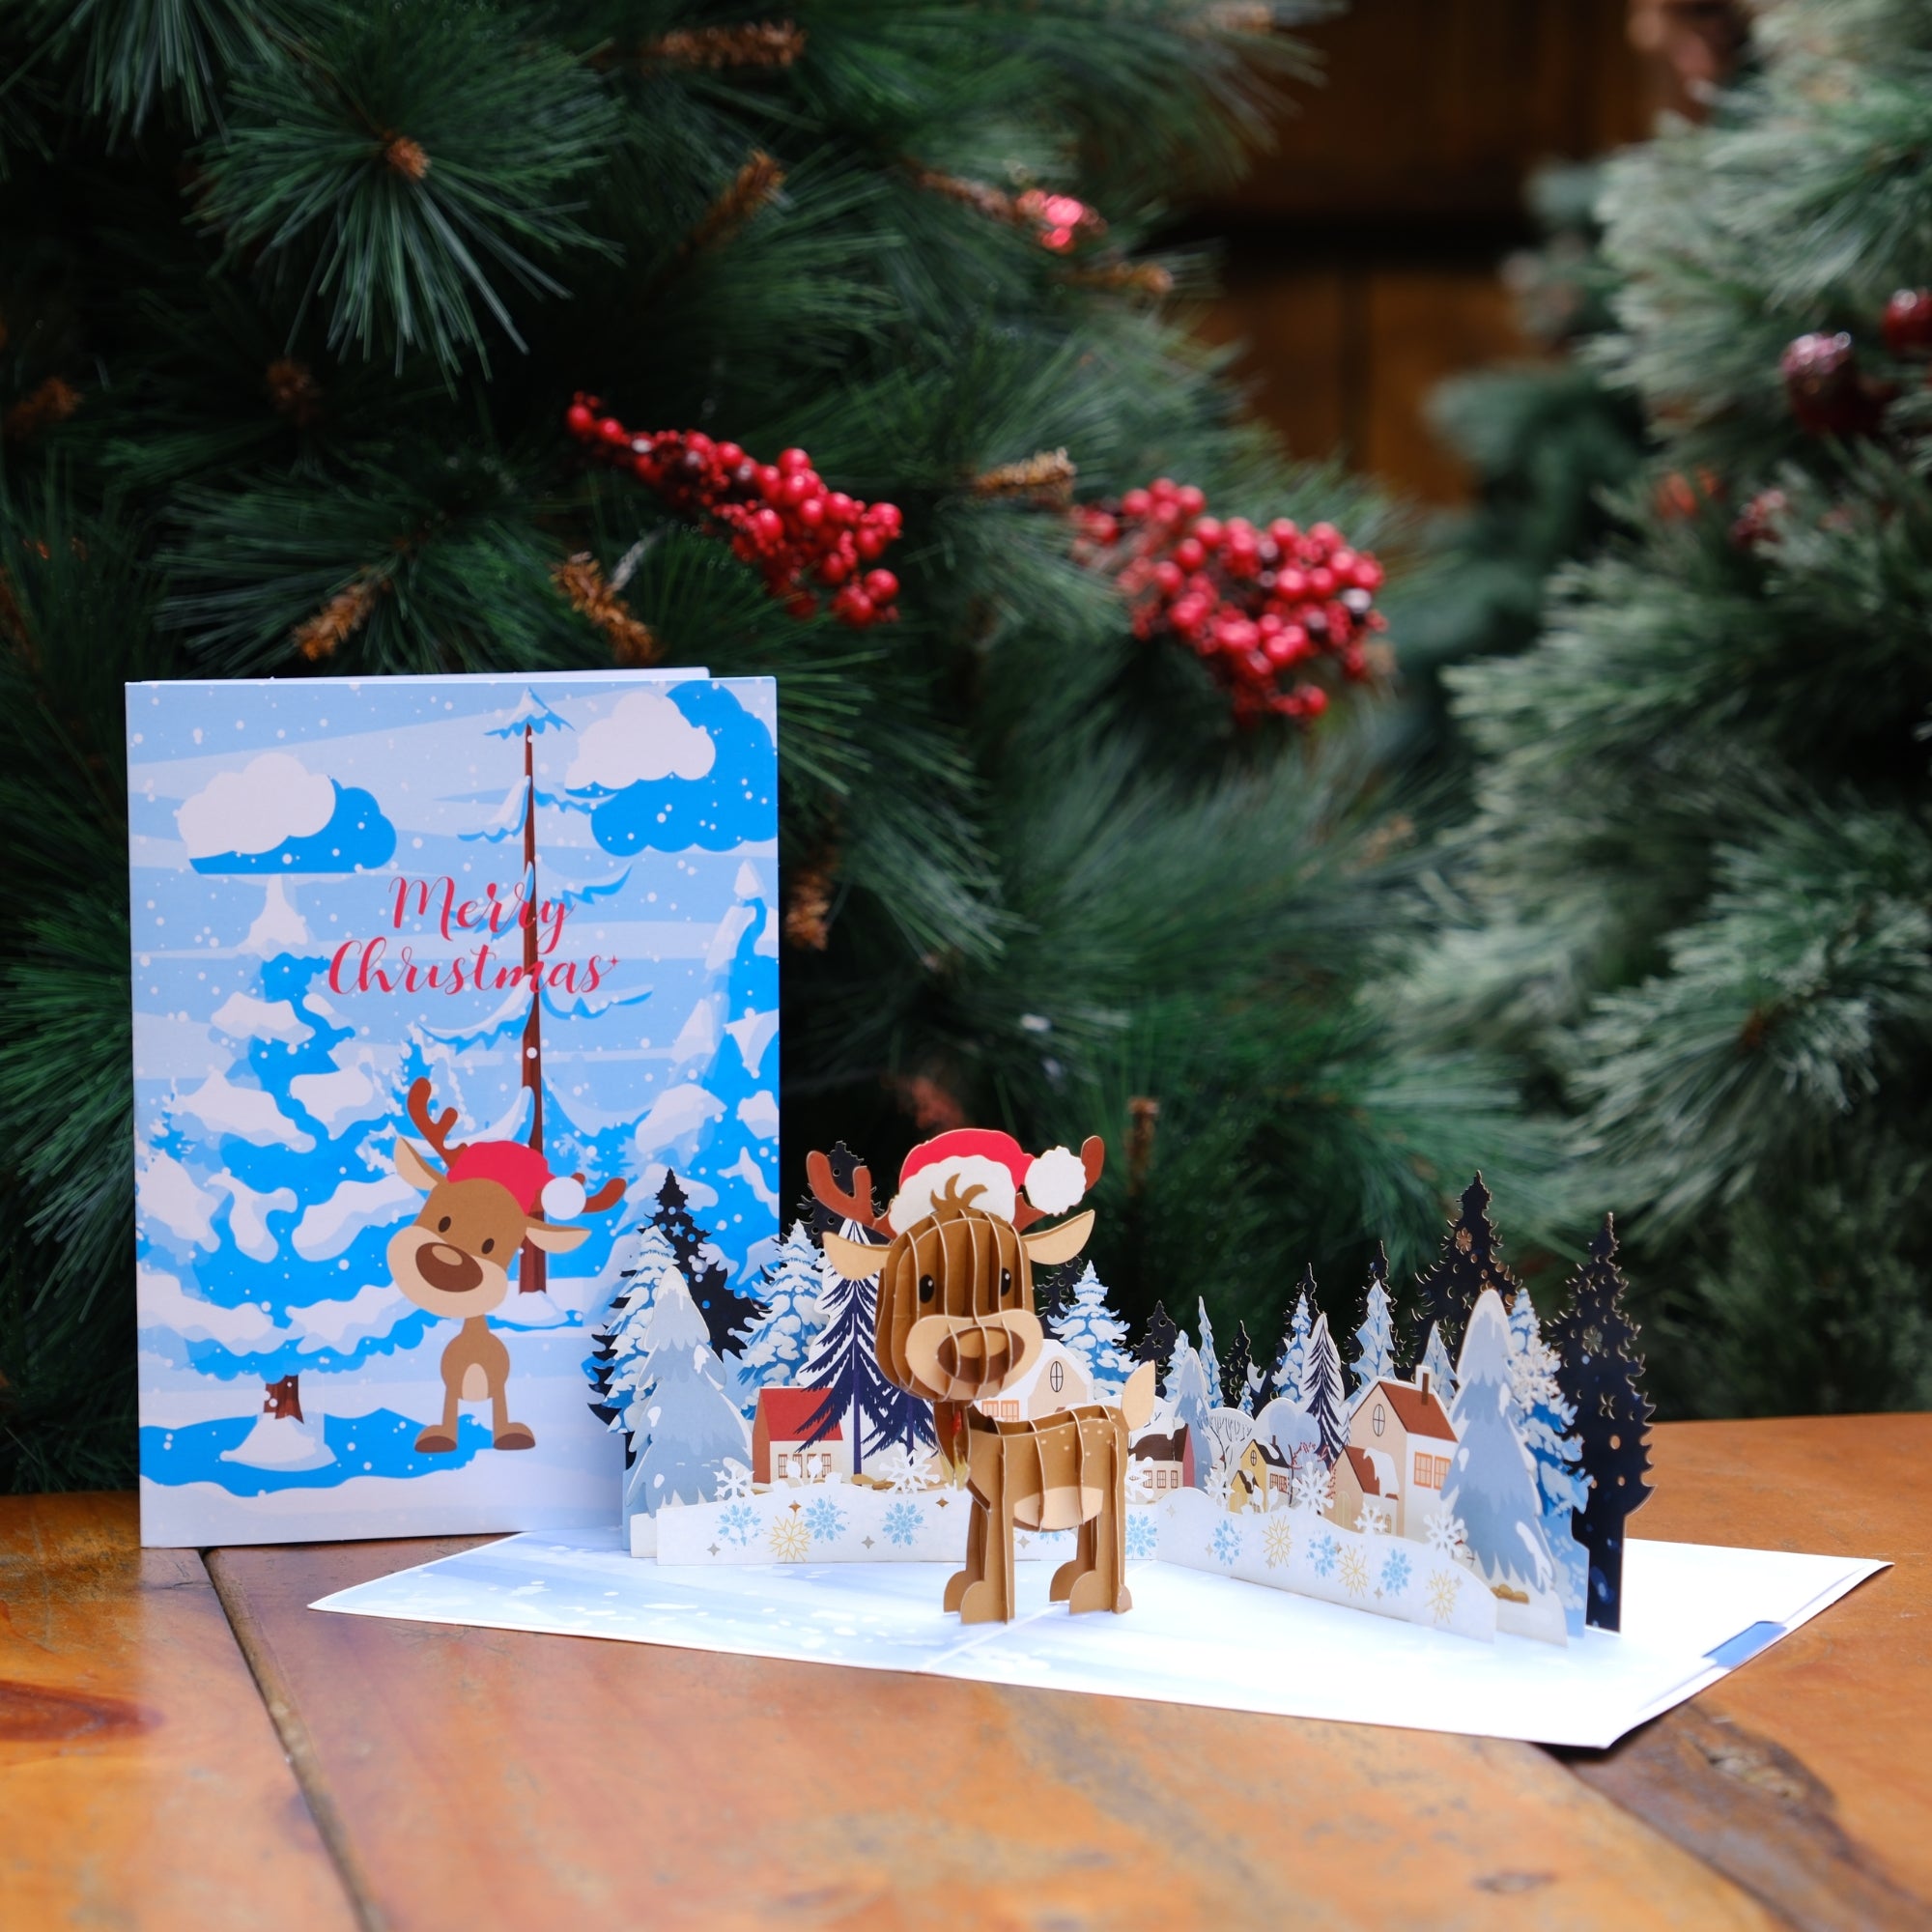 Pop Up Merry Christmas Greeting Card Adorable Reindeer, Christmas theme, Holiday Gift, Christmas decoration, Christmas kid gift, Family Gift